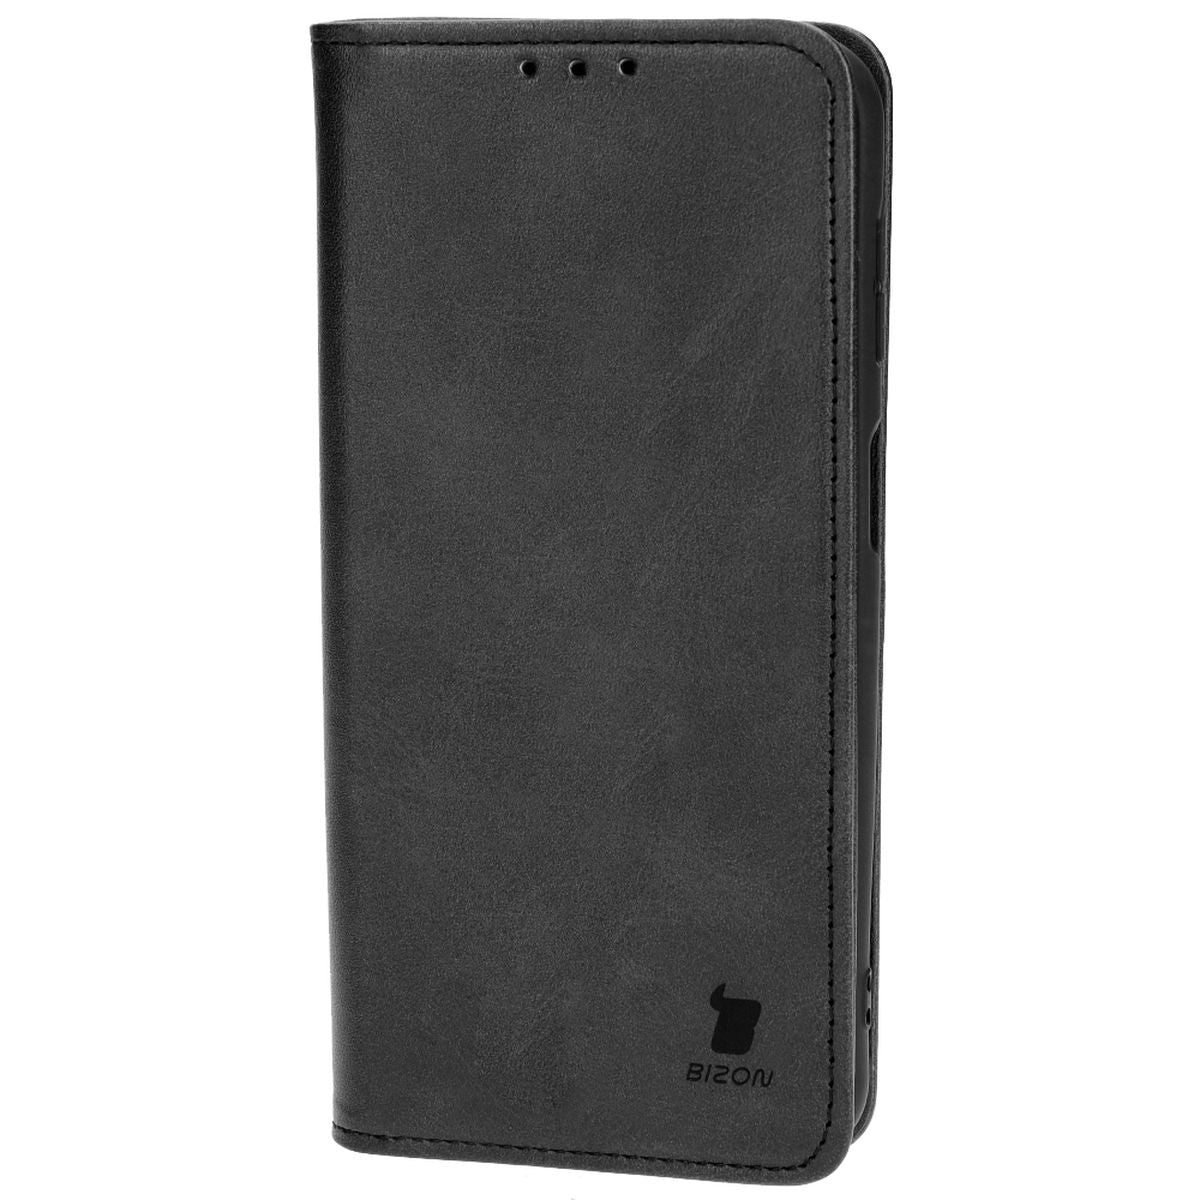 Schutzhülle Bizon Case Pocket Pro für Samsung Galaxy M34 5G, Schwarz